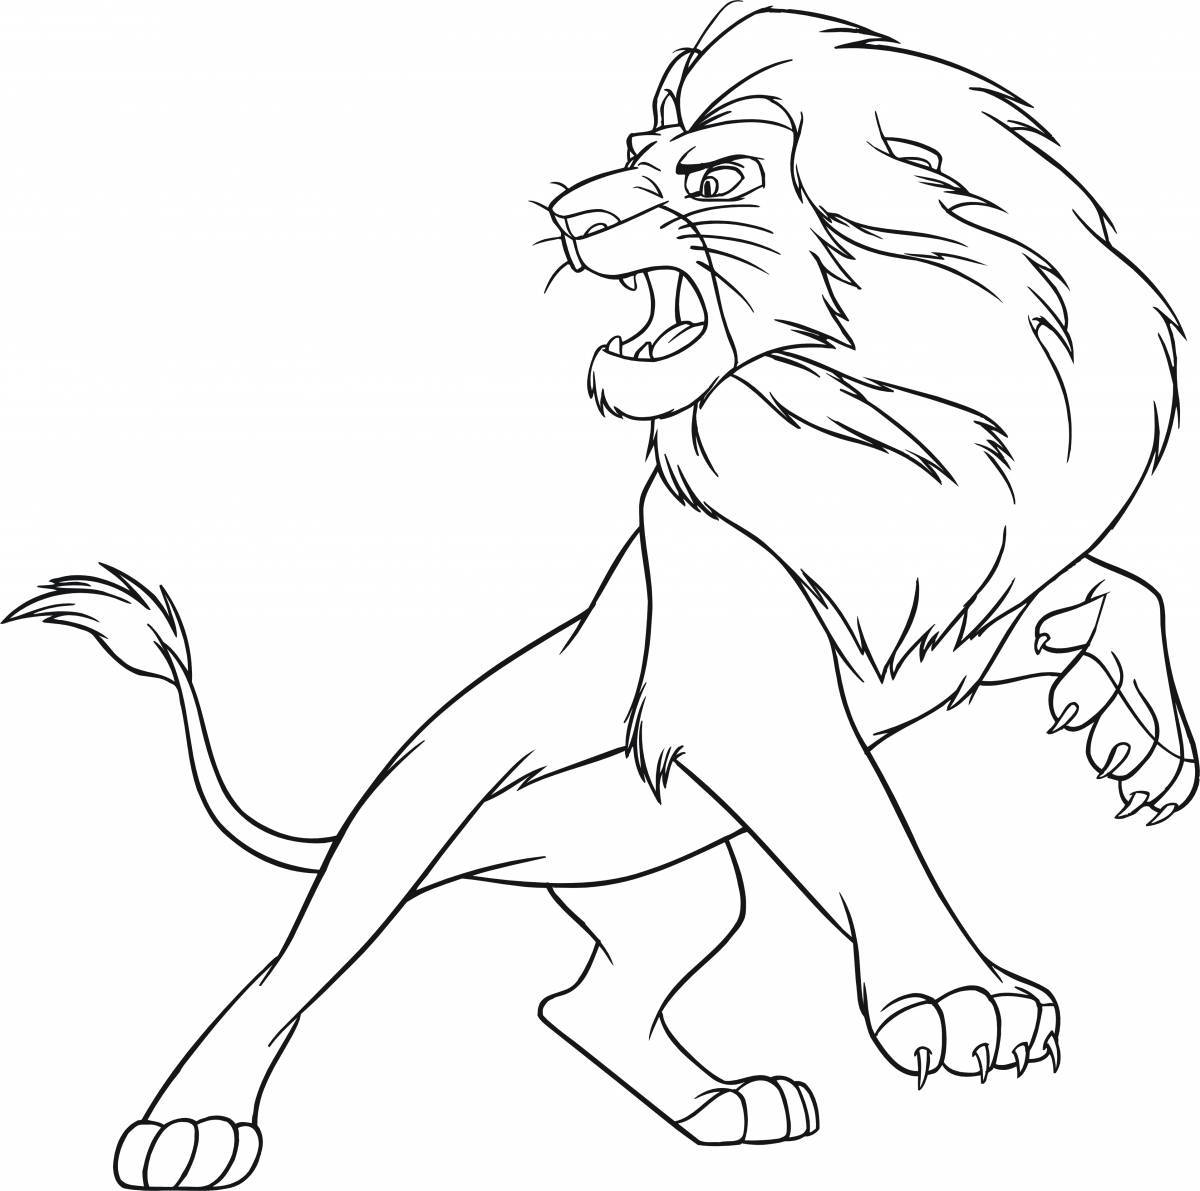 Lion #1